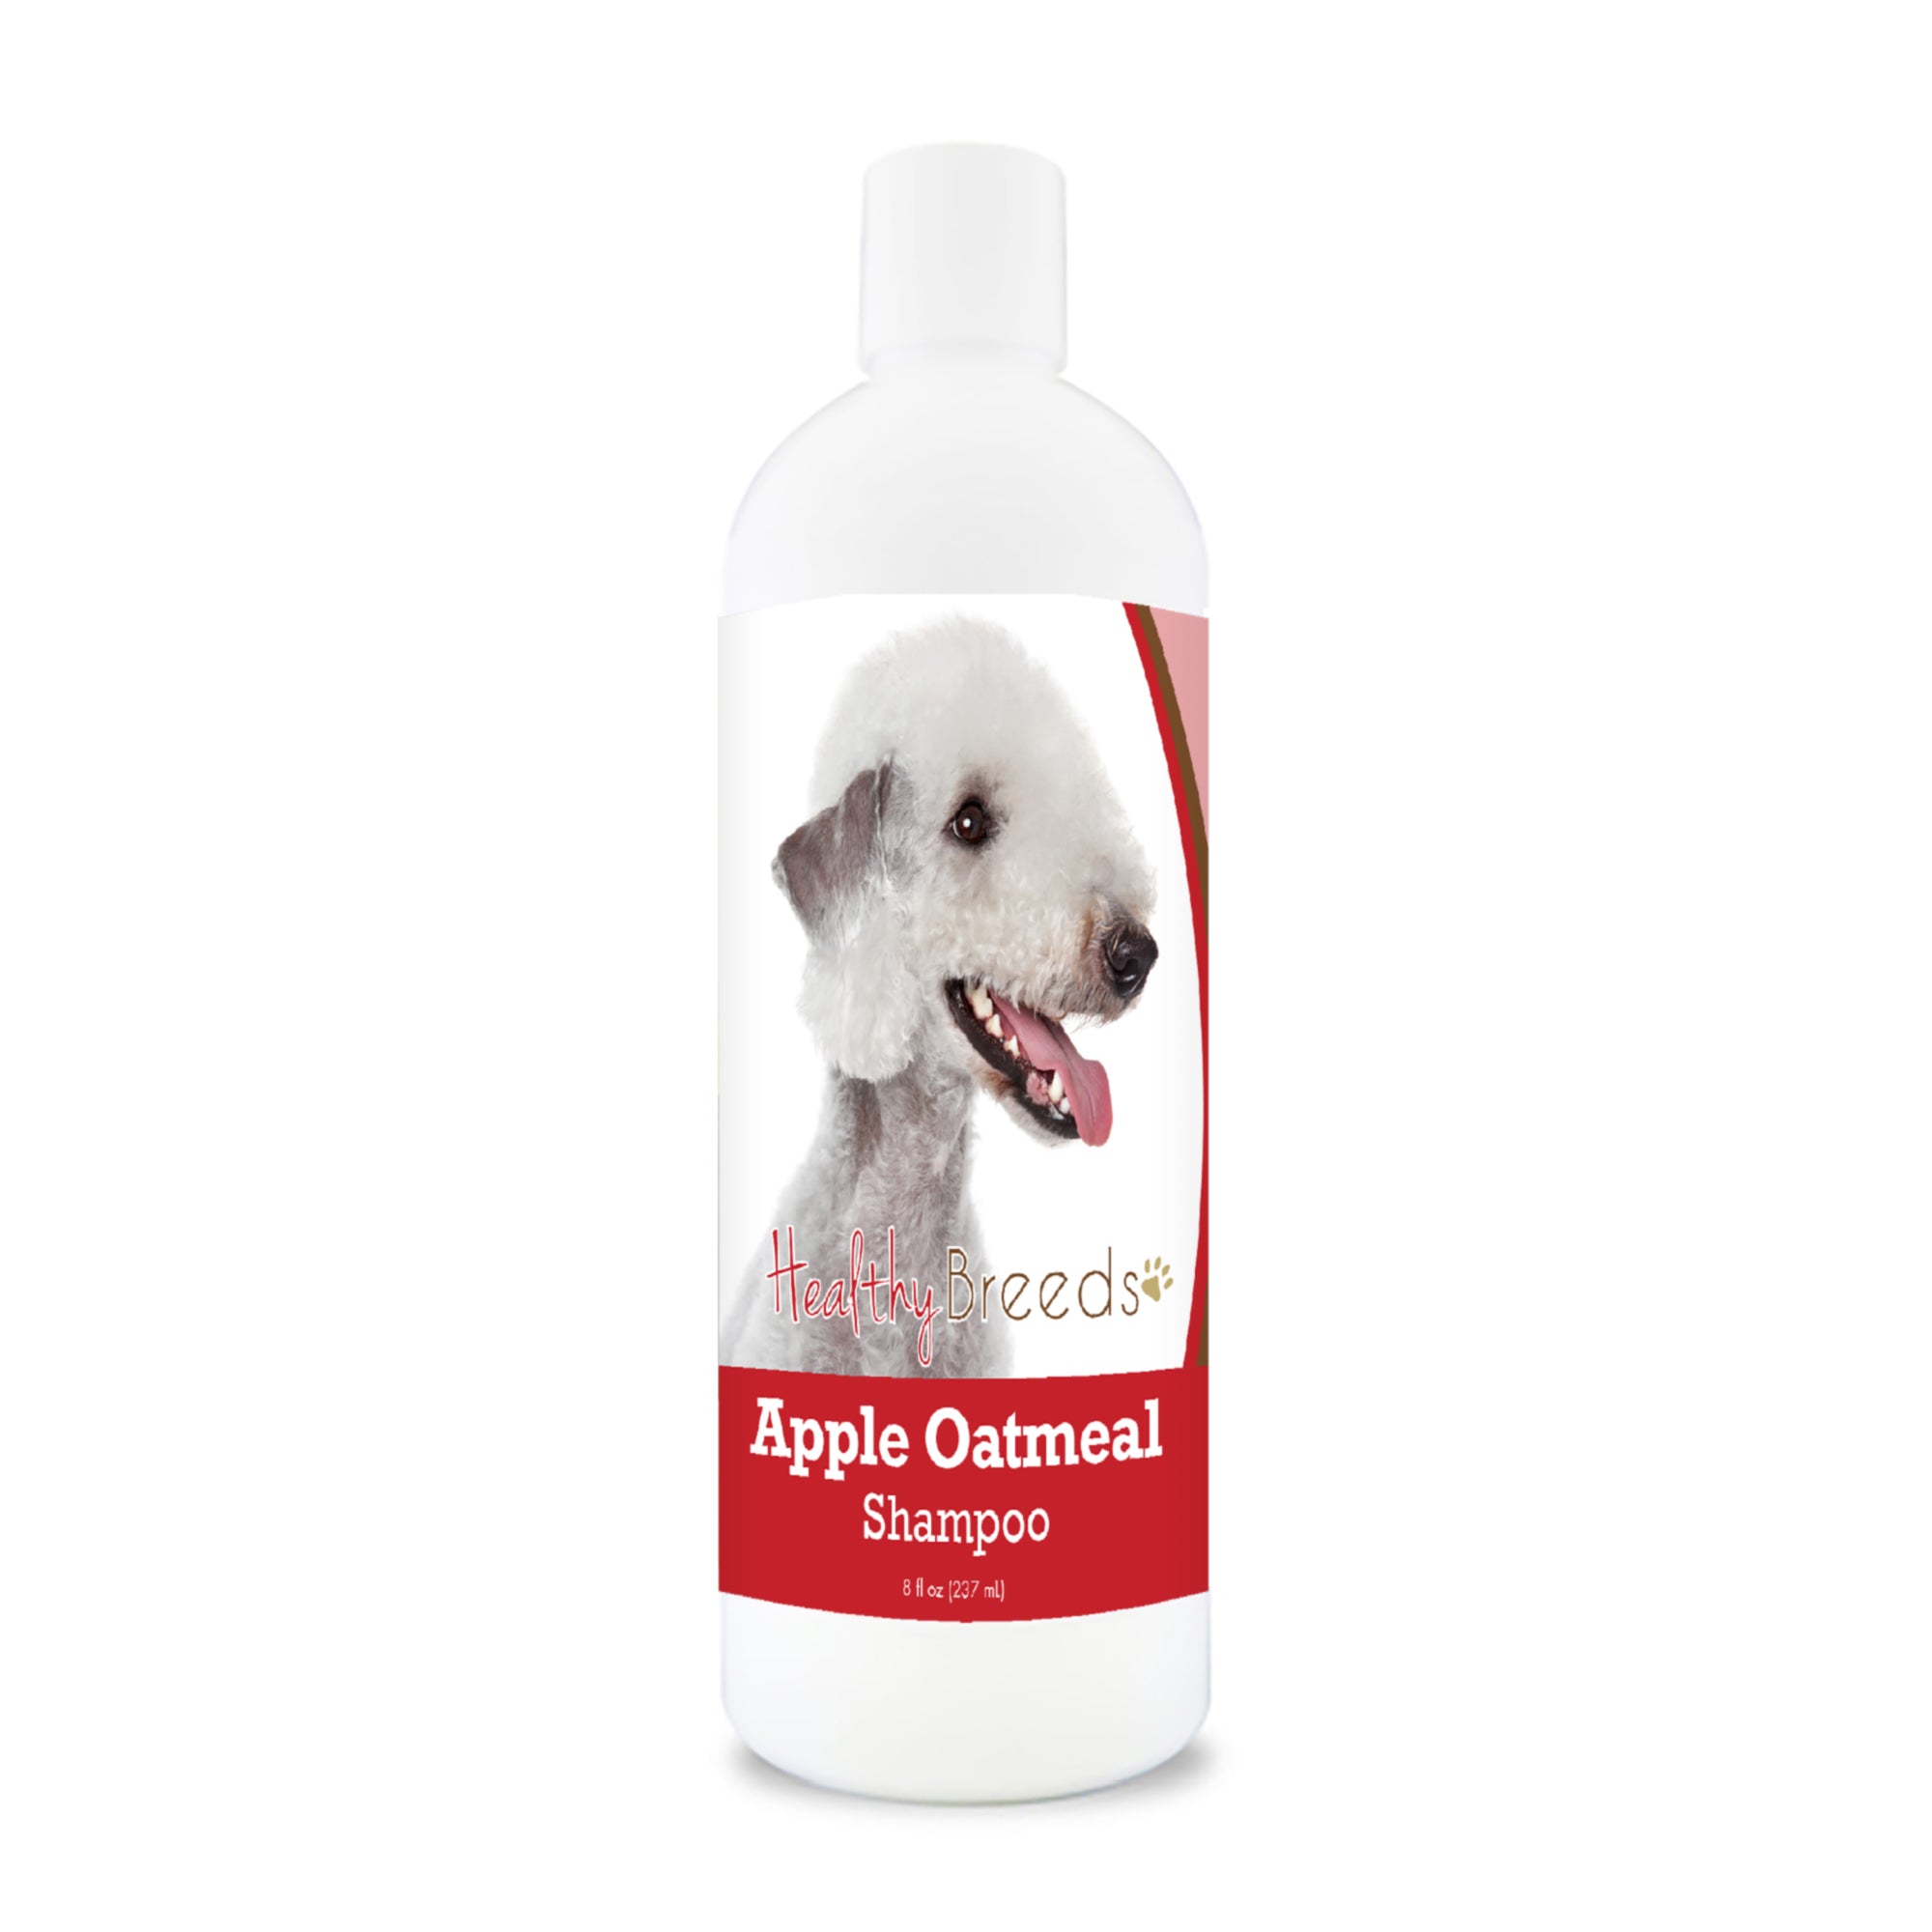 Bedlington Terrier Apple Oatmeal Shampoo 8 oz